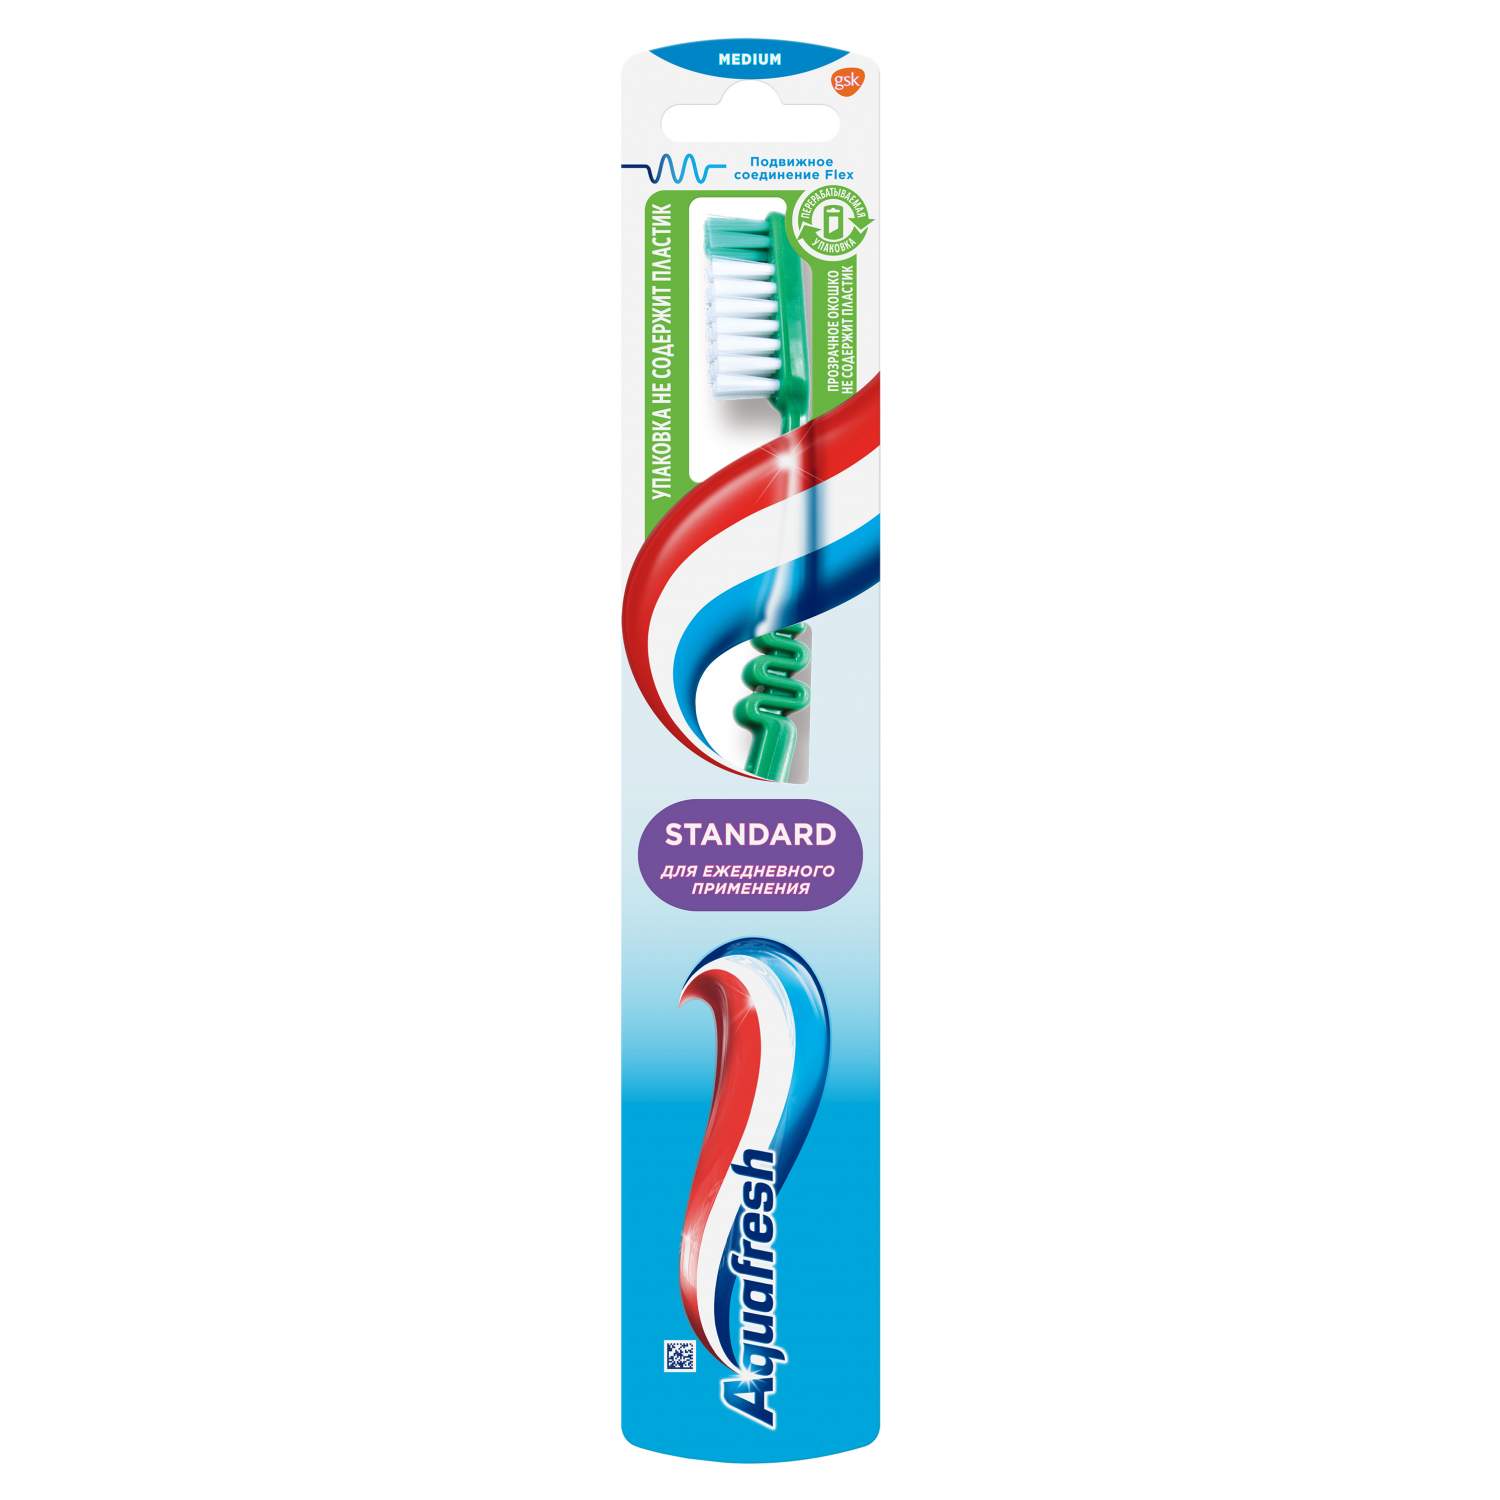 Зубные щетки Aquafresh - купить зубные щетки Акафрэш, цены на Мегамаркет